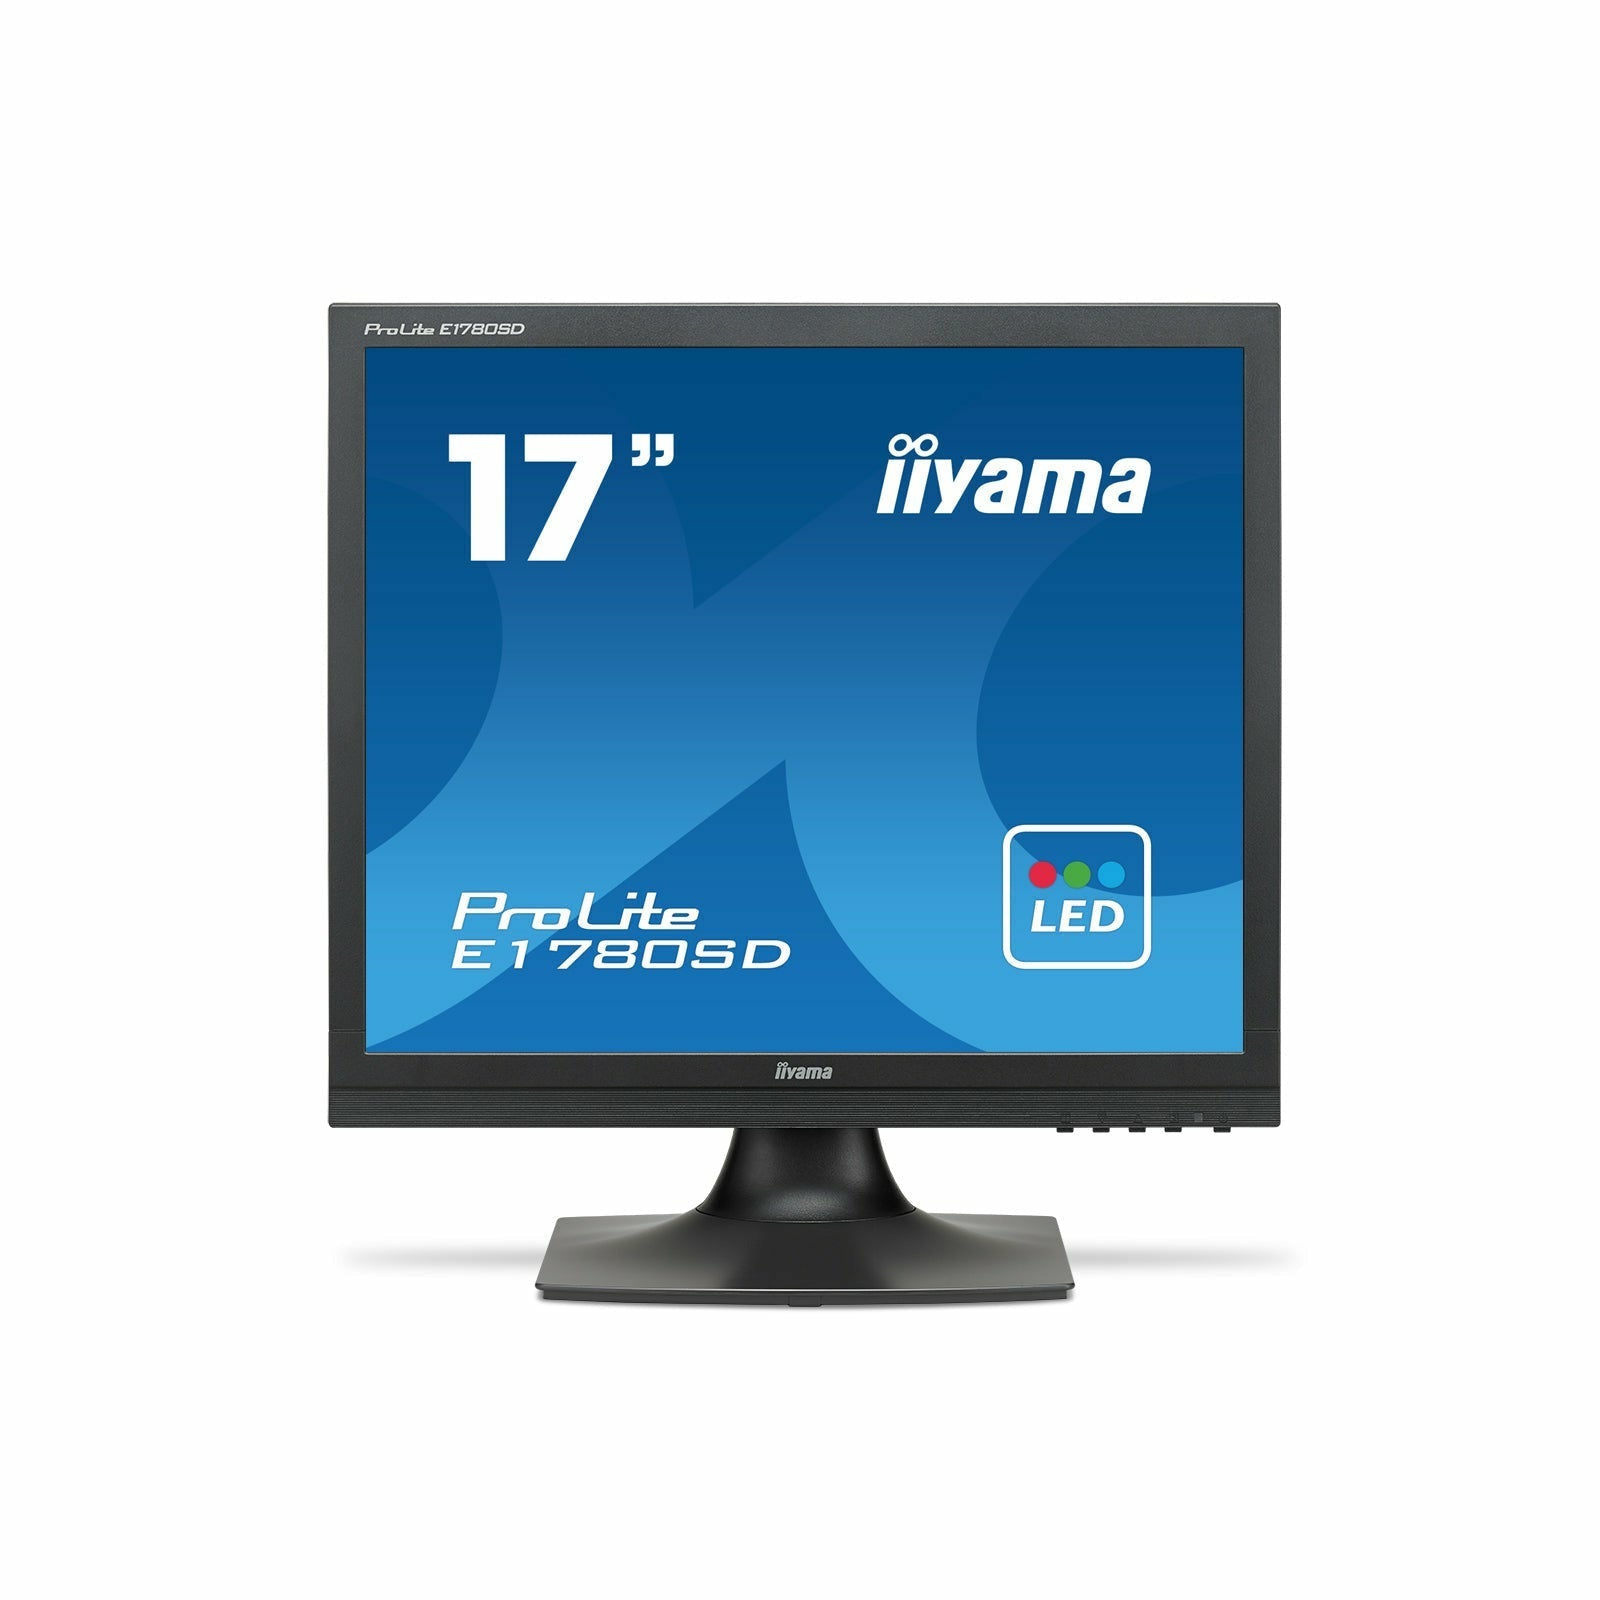 Dark Cyan iiyama ProLite E1780SD-B1 17" TN LCD-backlit Monitor